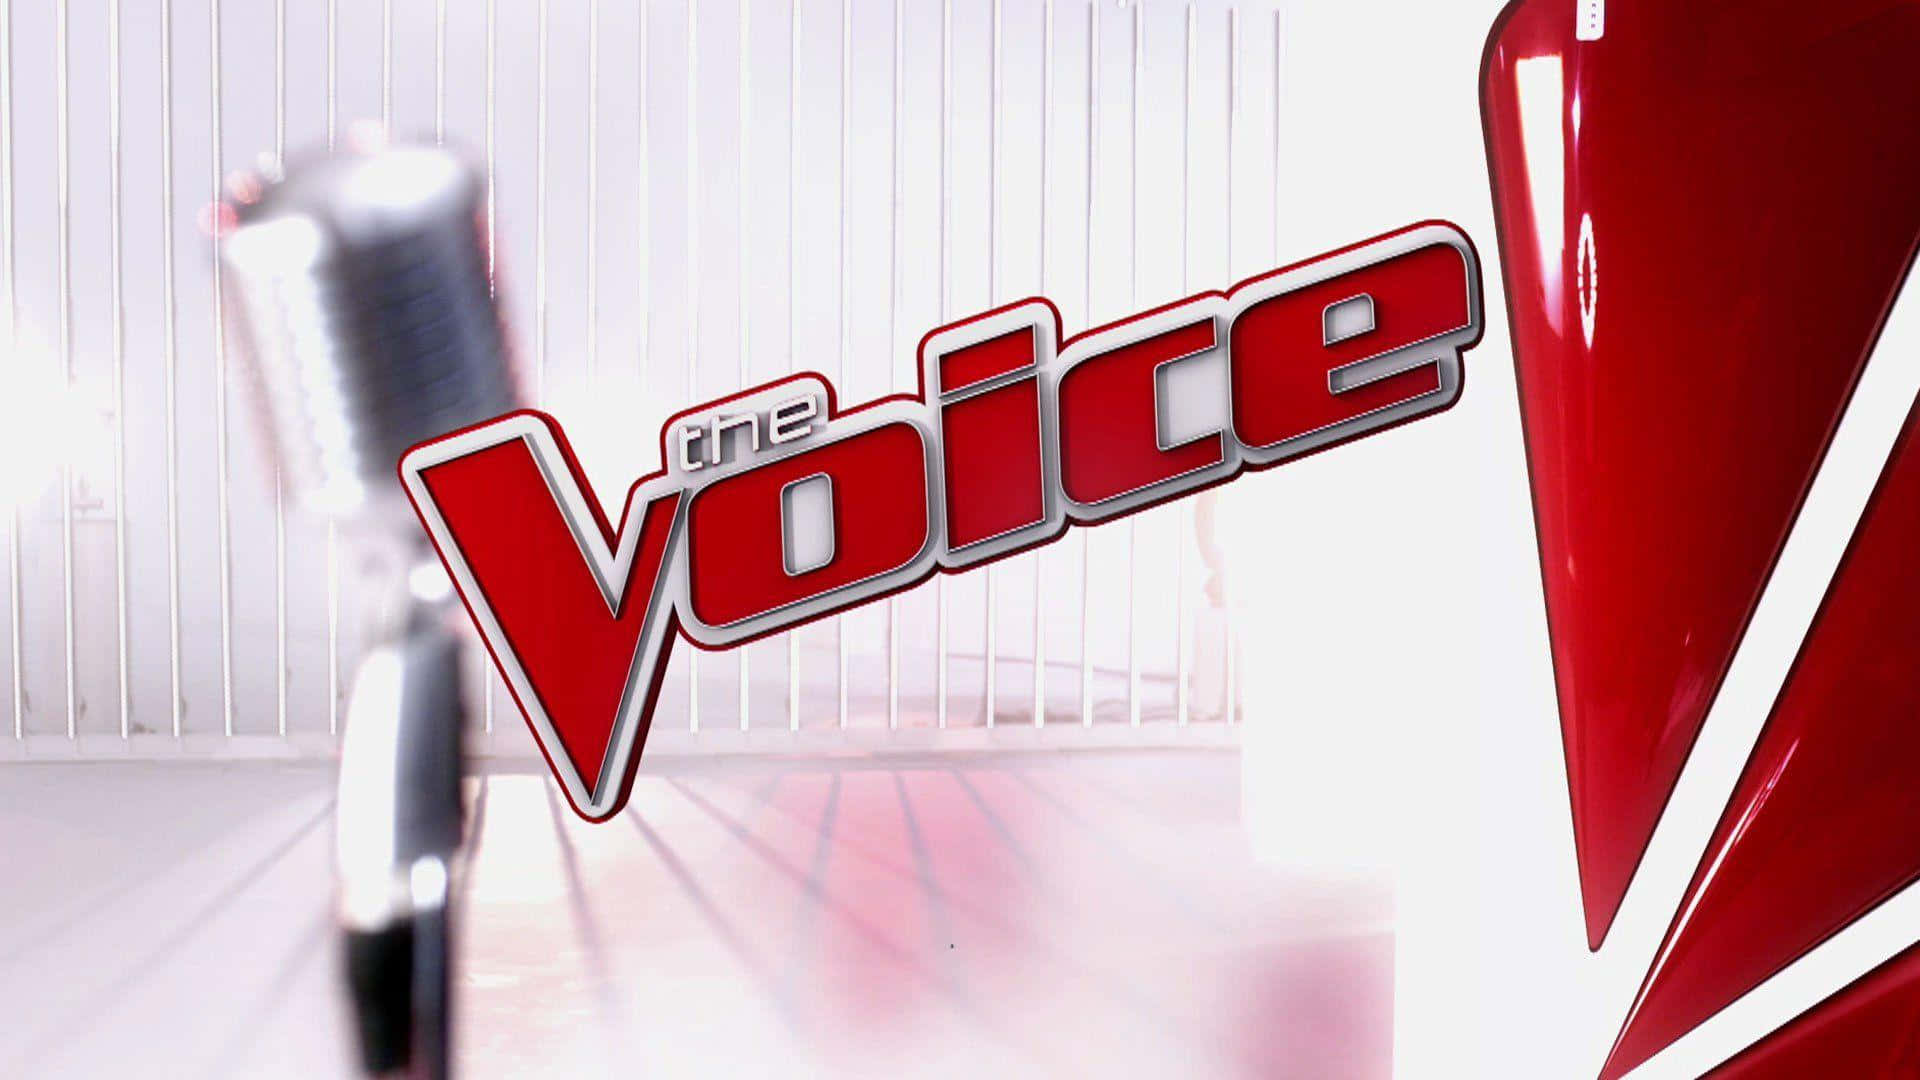 Voice. The Voices. Voice логотип. Голос. The Voice заставка.